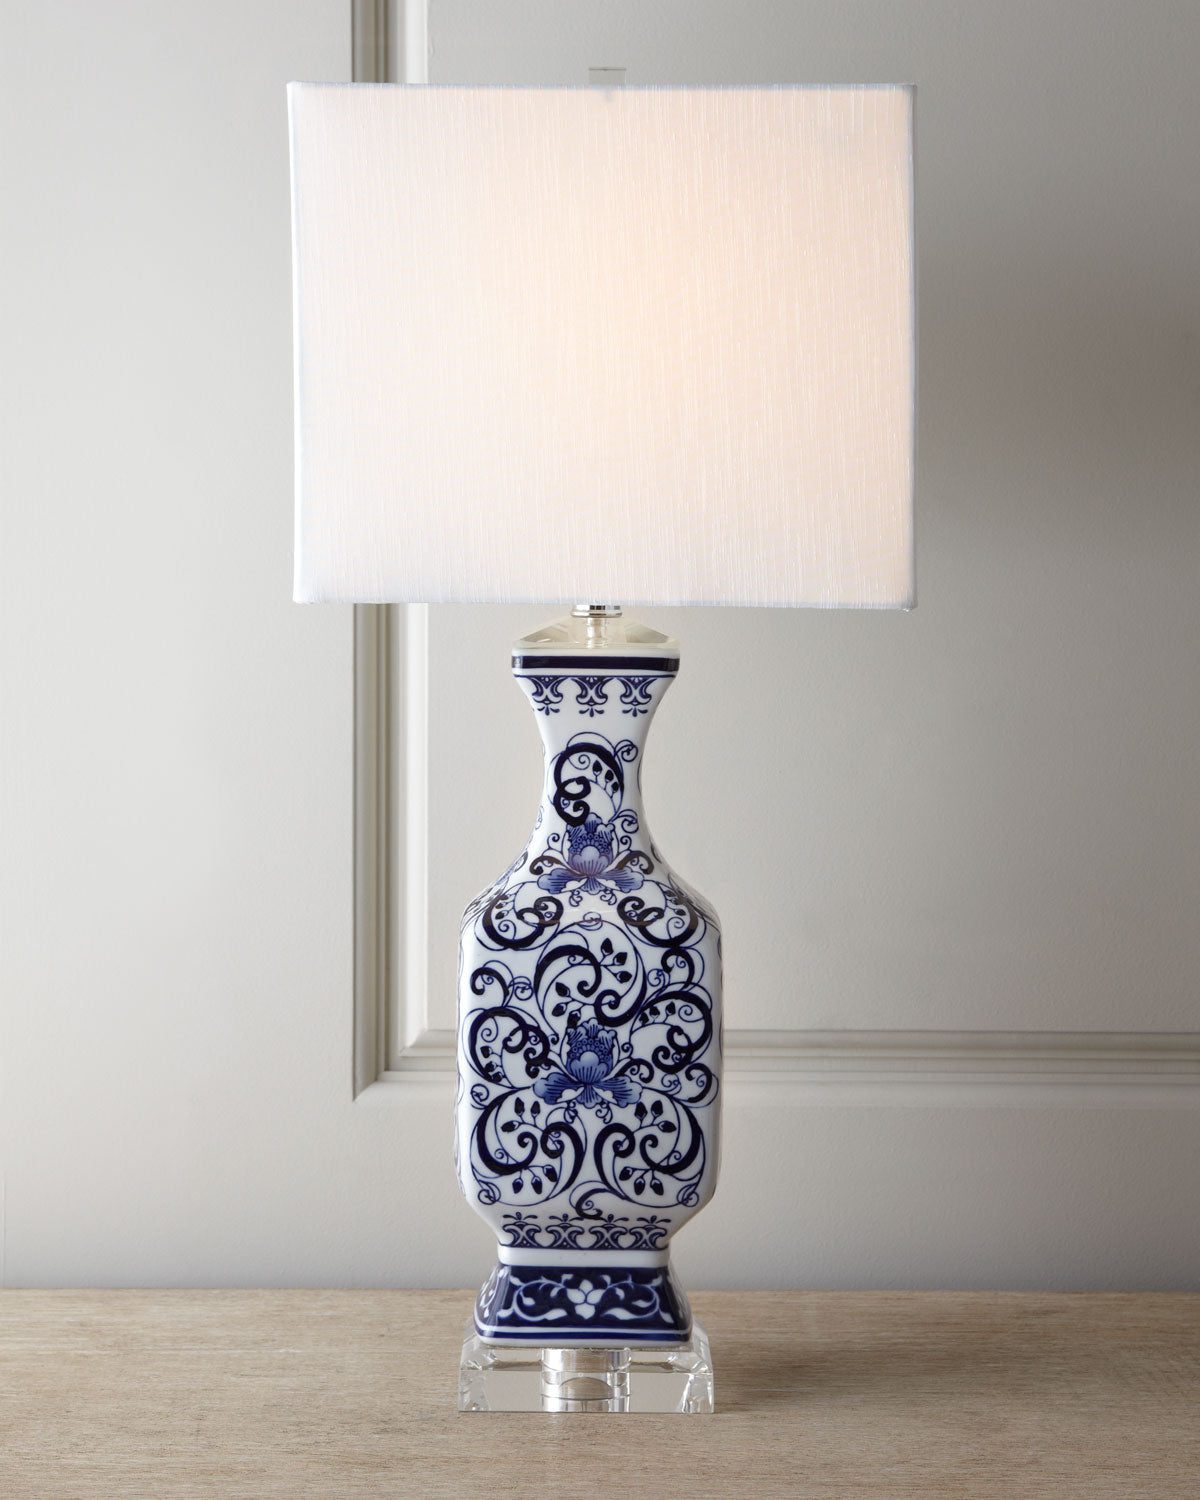 Синяя керамическая настольная лампа с орнаментом в китайском стиле шинуазри "Кентерберри"